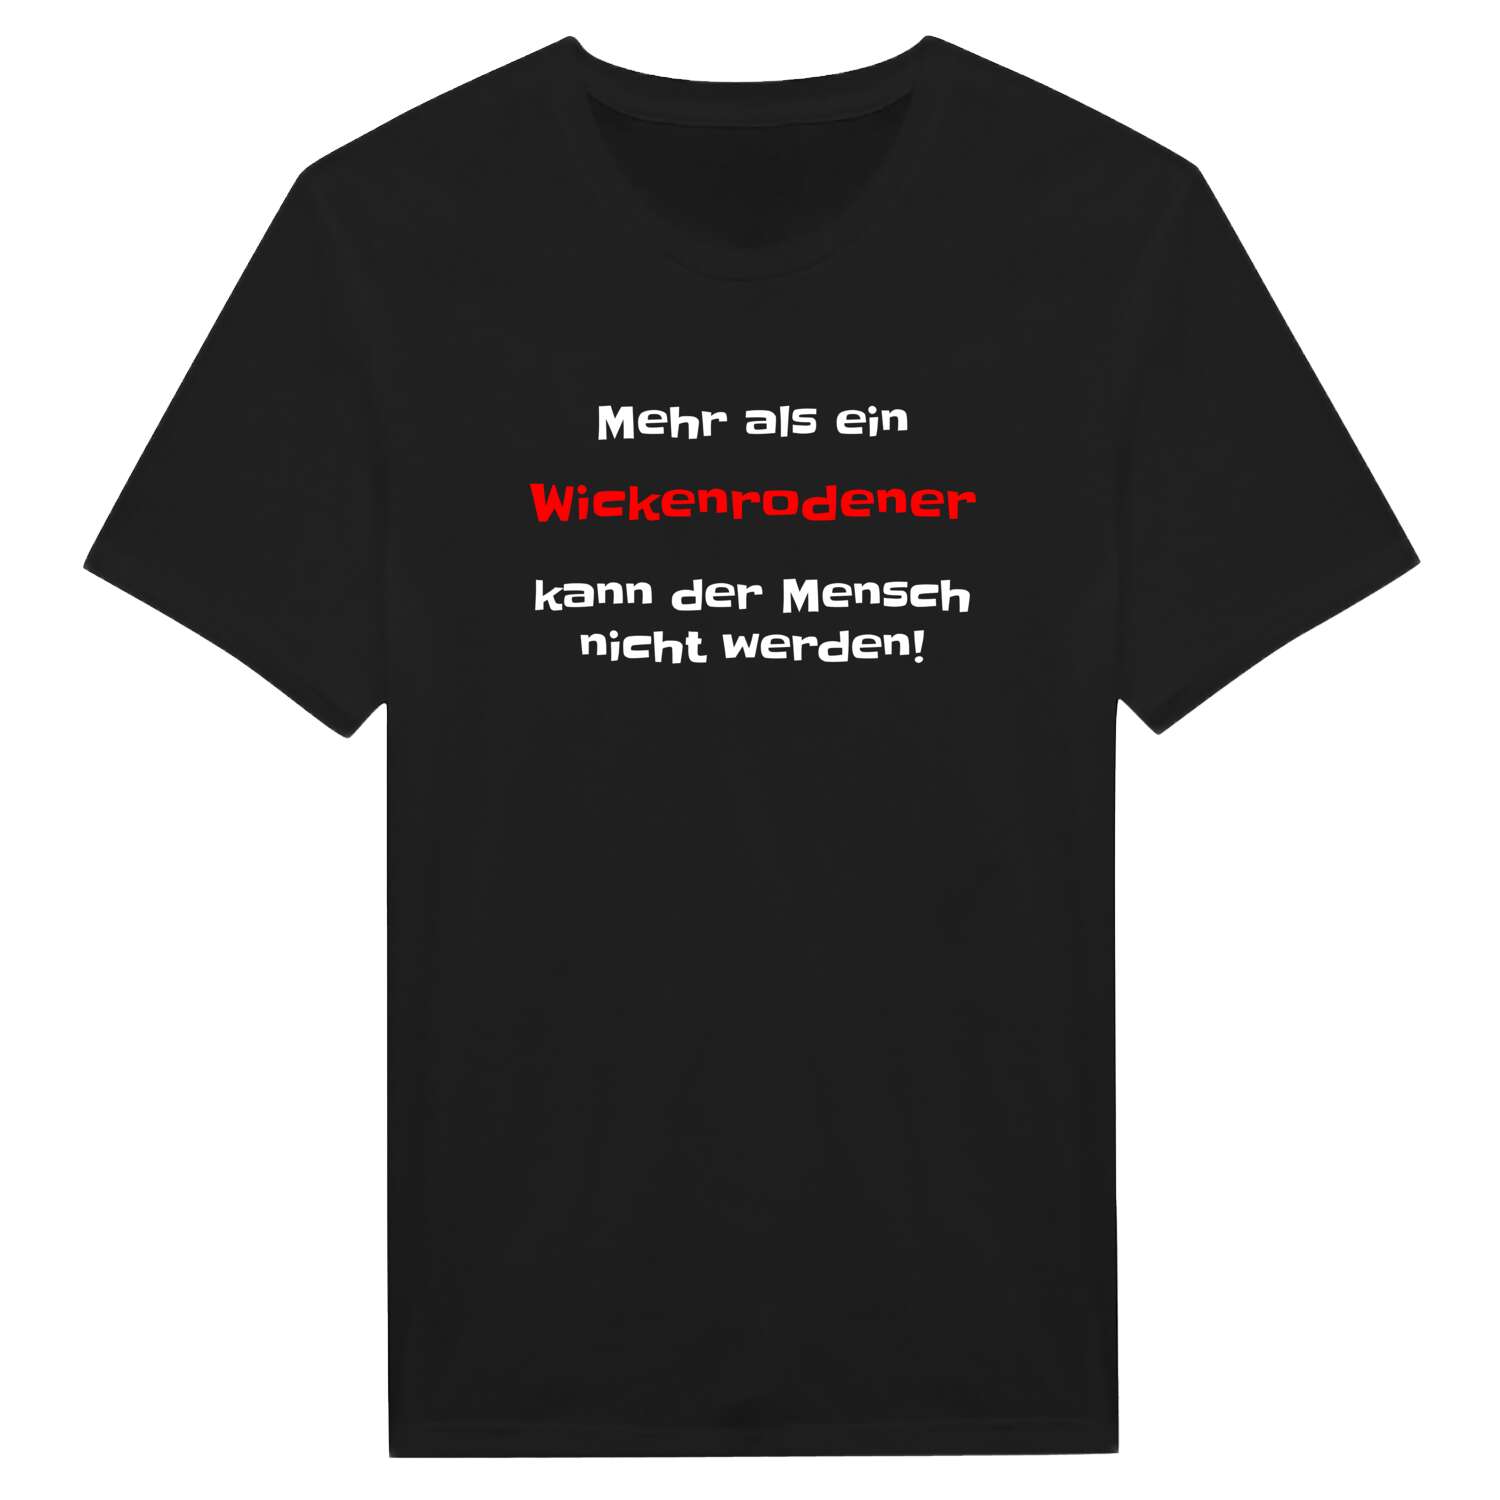 Wickenrode T-Shirt »Mehr als ein«